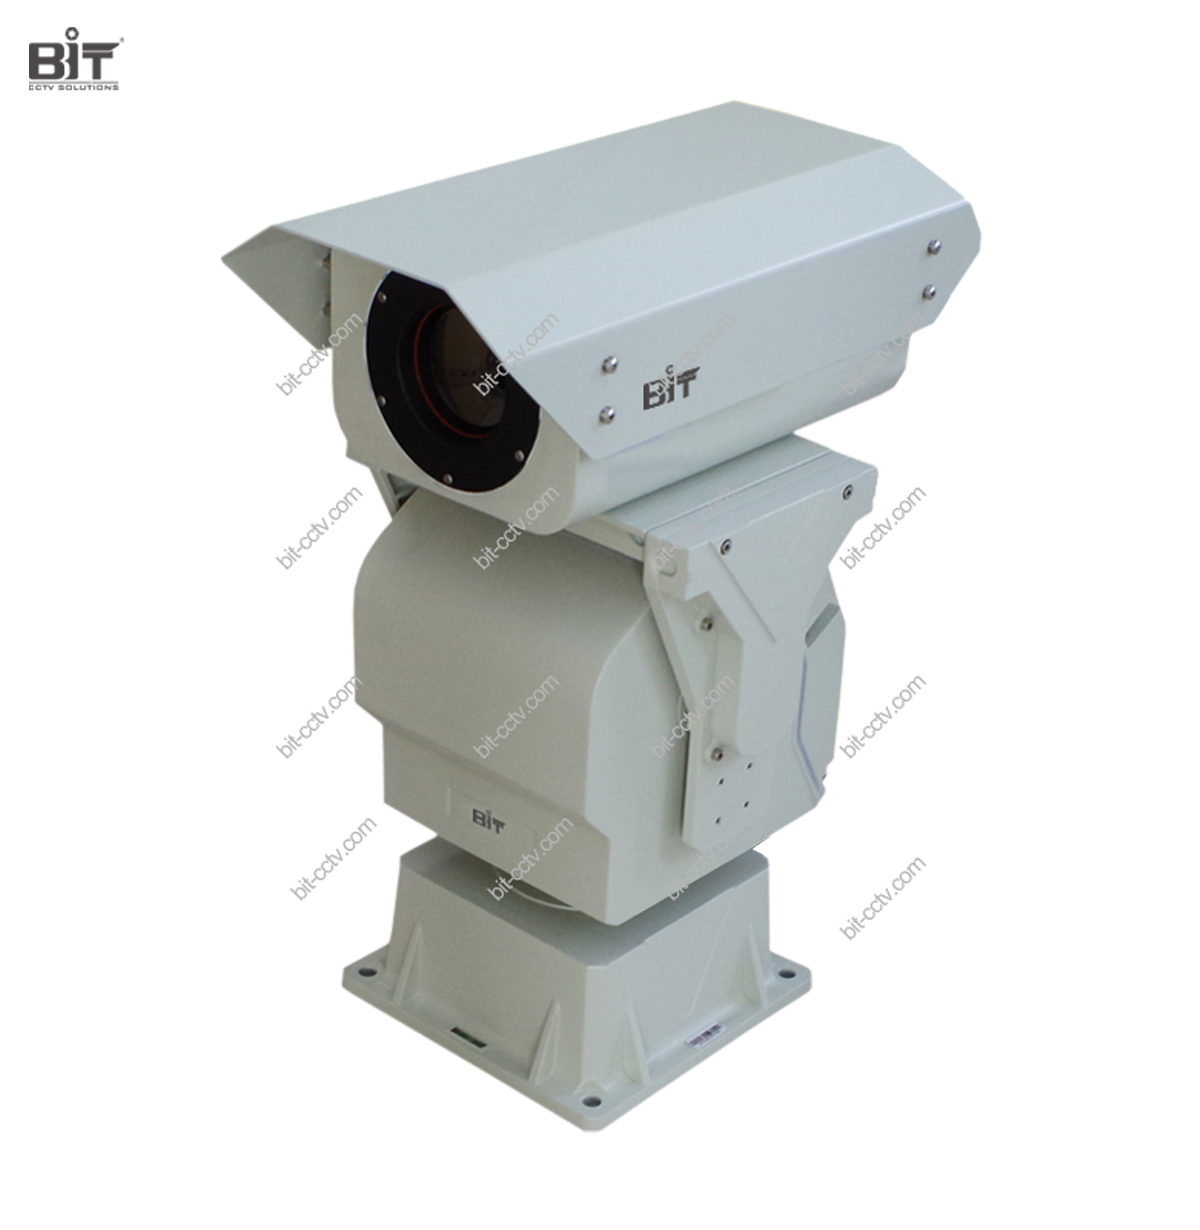 BIT-SN07-W Long Range Thermal Imaging PTZ Camera